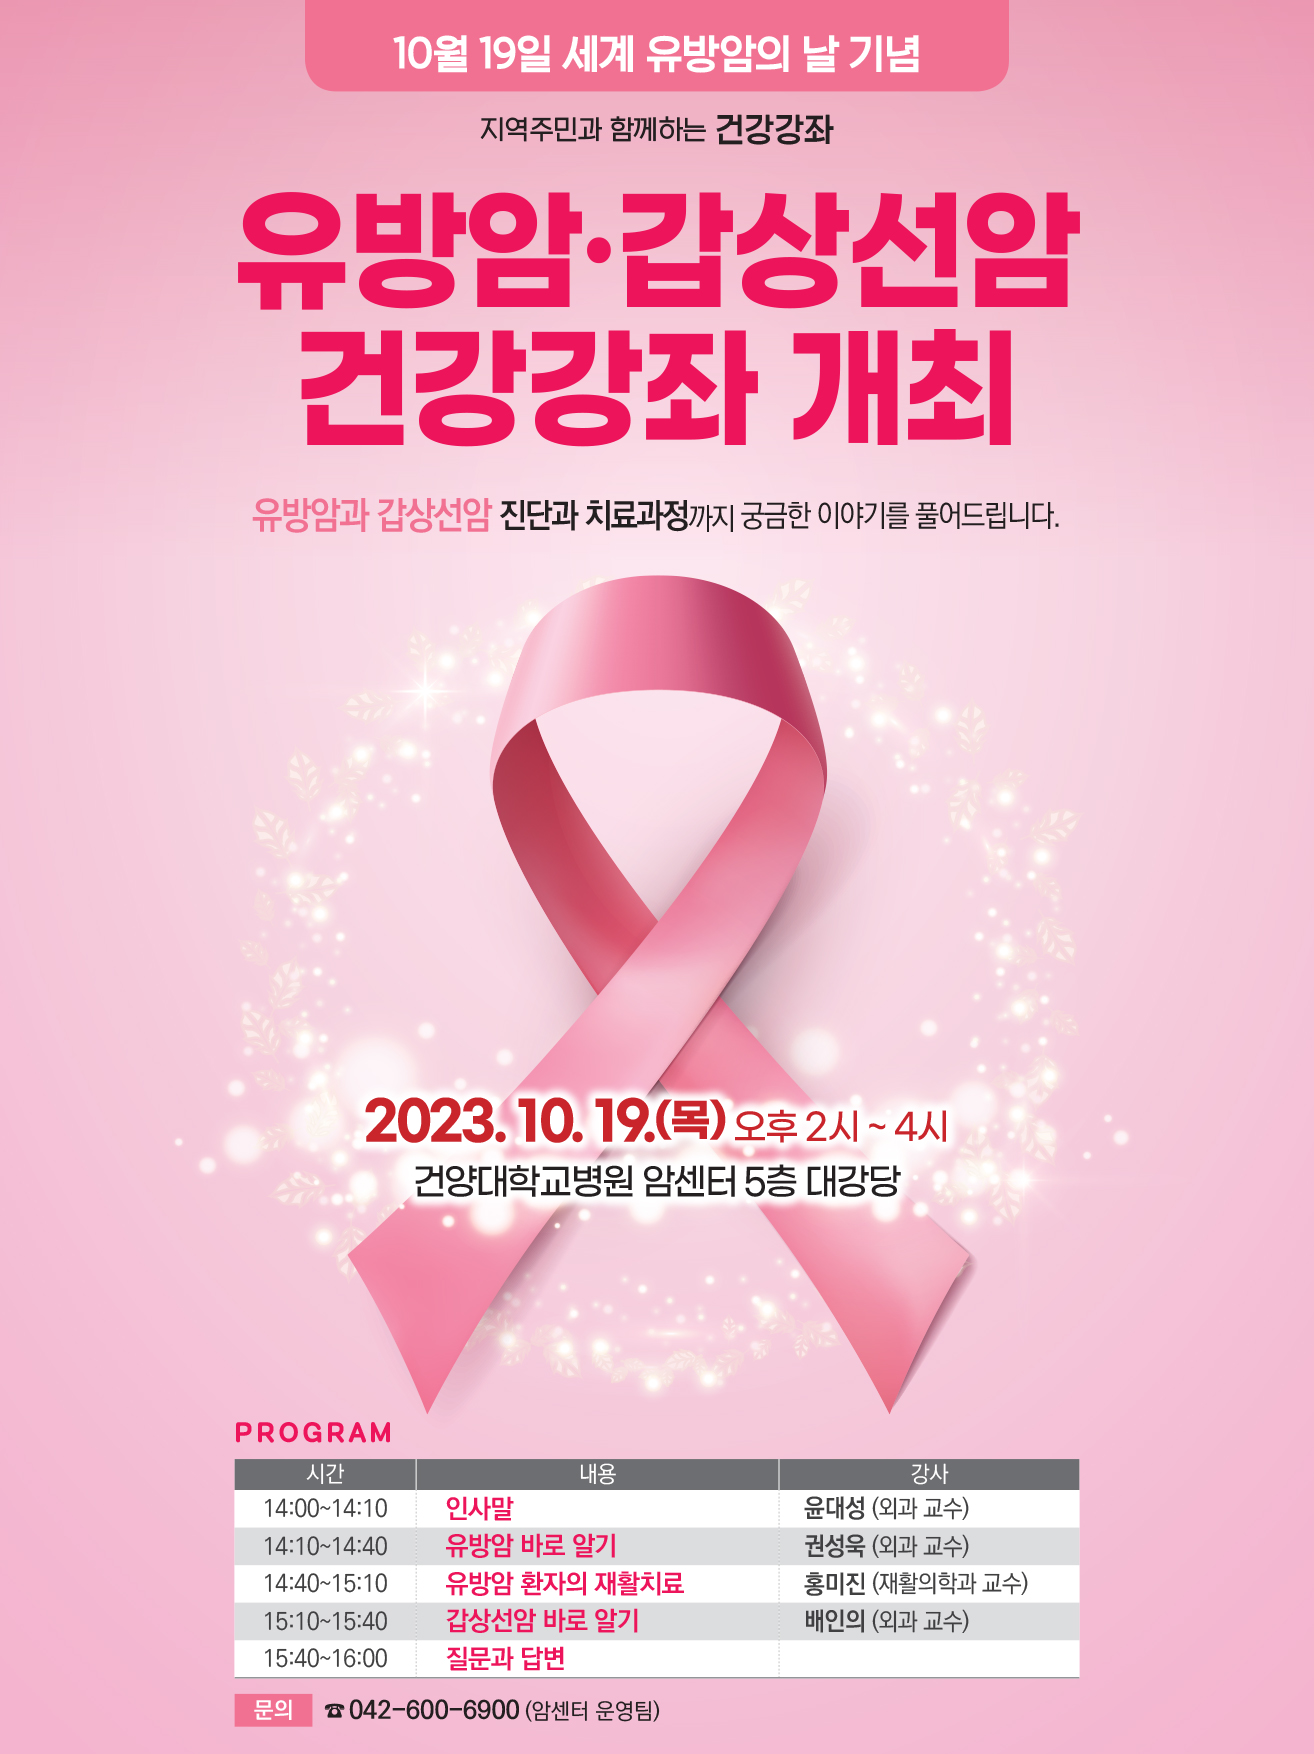 유방암갑상선암 건강강좌 개최